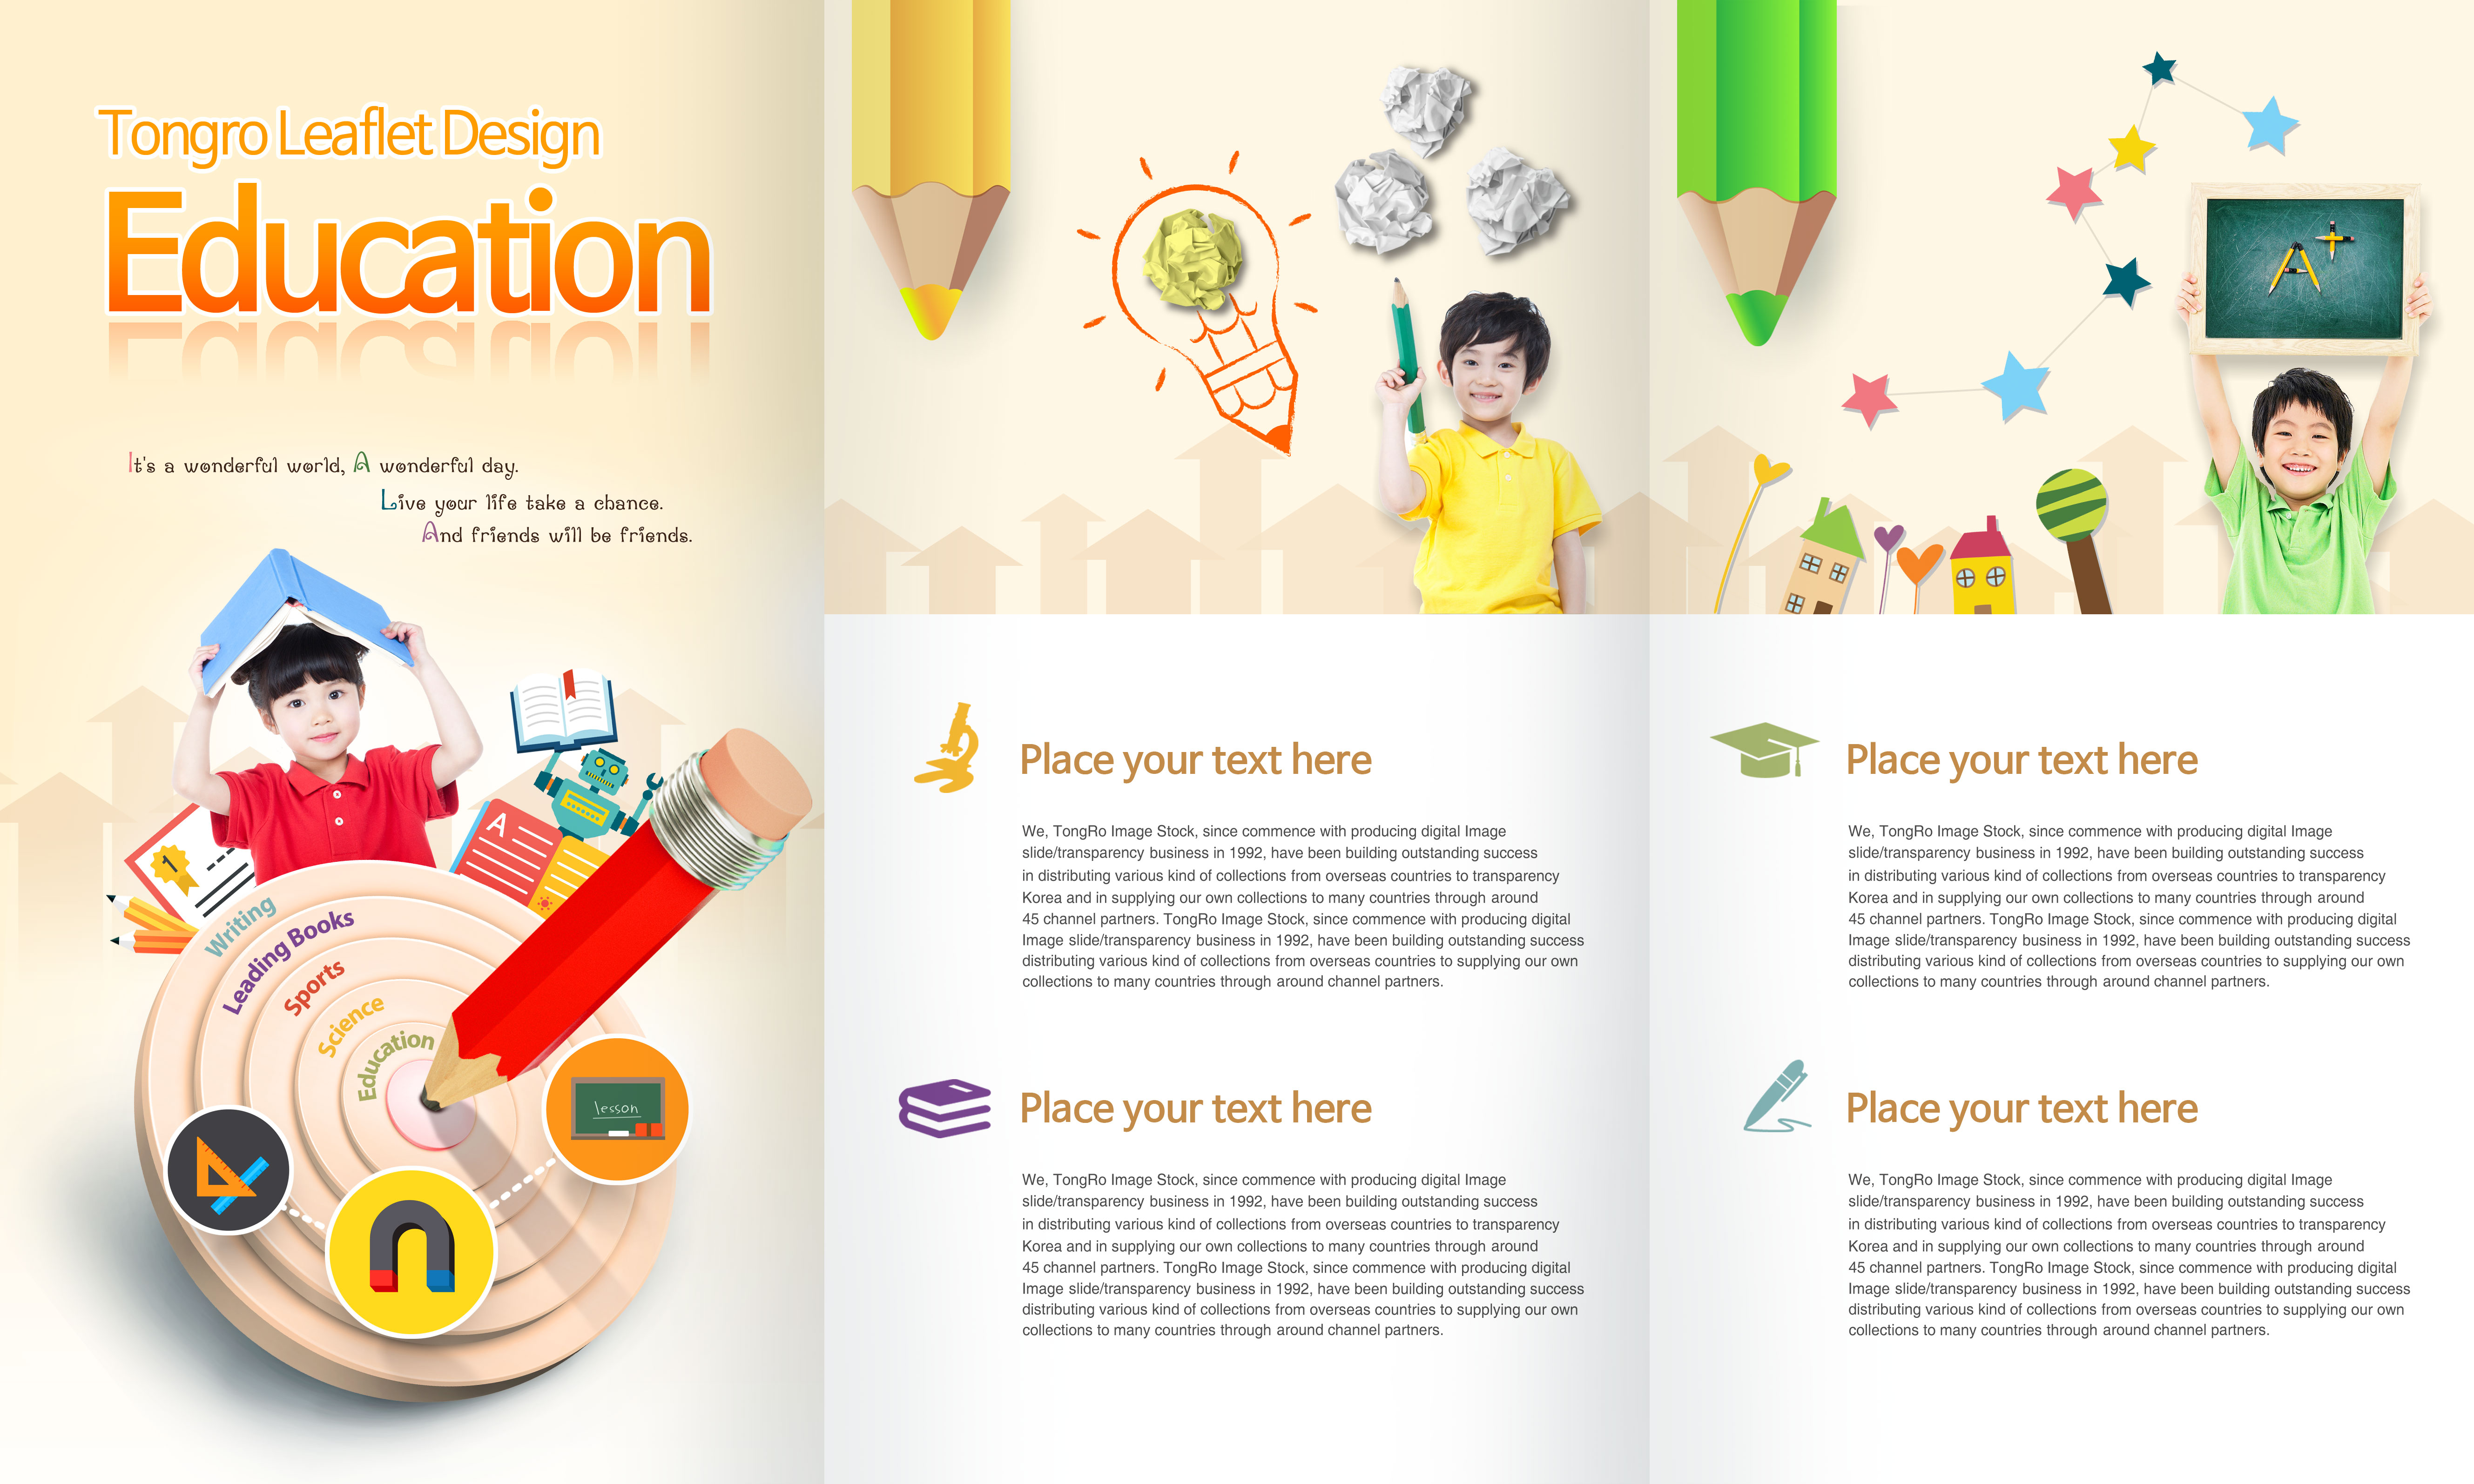 少儿&儿童教育培训机构广告传单设计模板插图